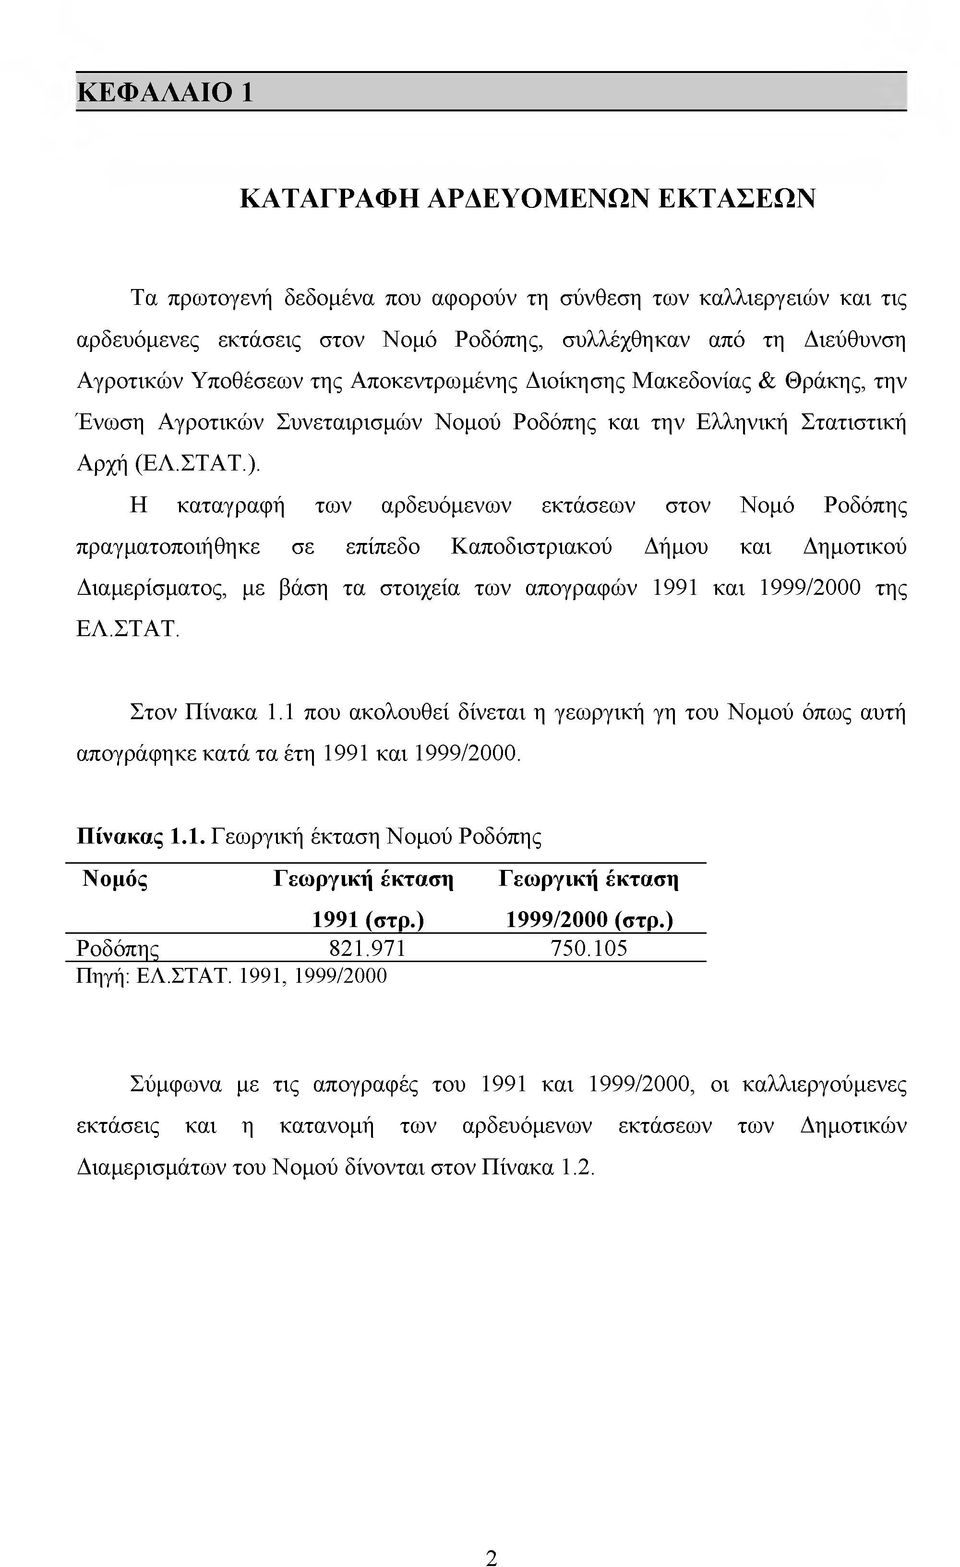 H καταγραφή των αρδευόμενων εκτάσεων στον Νομό Ροδόπης πραγματοποιήθηκε σε επίπεδο Καποδιστριακού Δήμου και Δημοτικού Διαμερίσματος, με βάση τα στοιχεία των απογραφών 1991 και 1999/2000 της ΕΛ.ΣΤΑΤ.